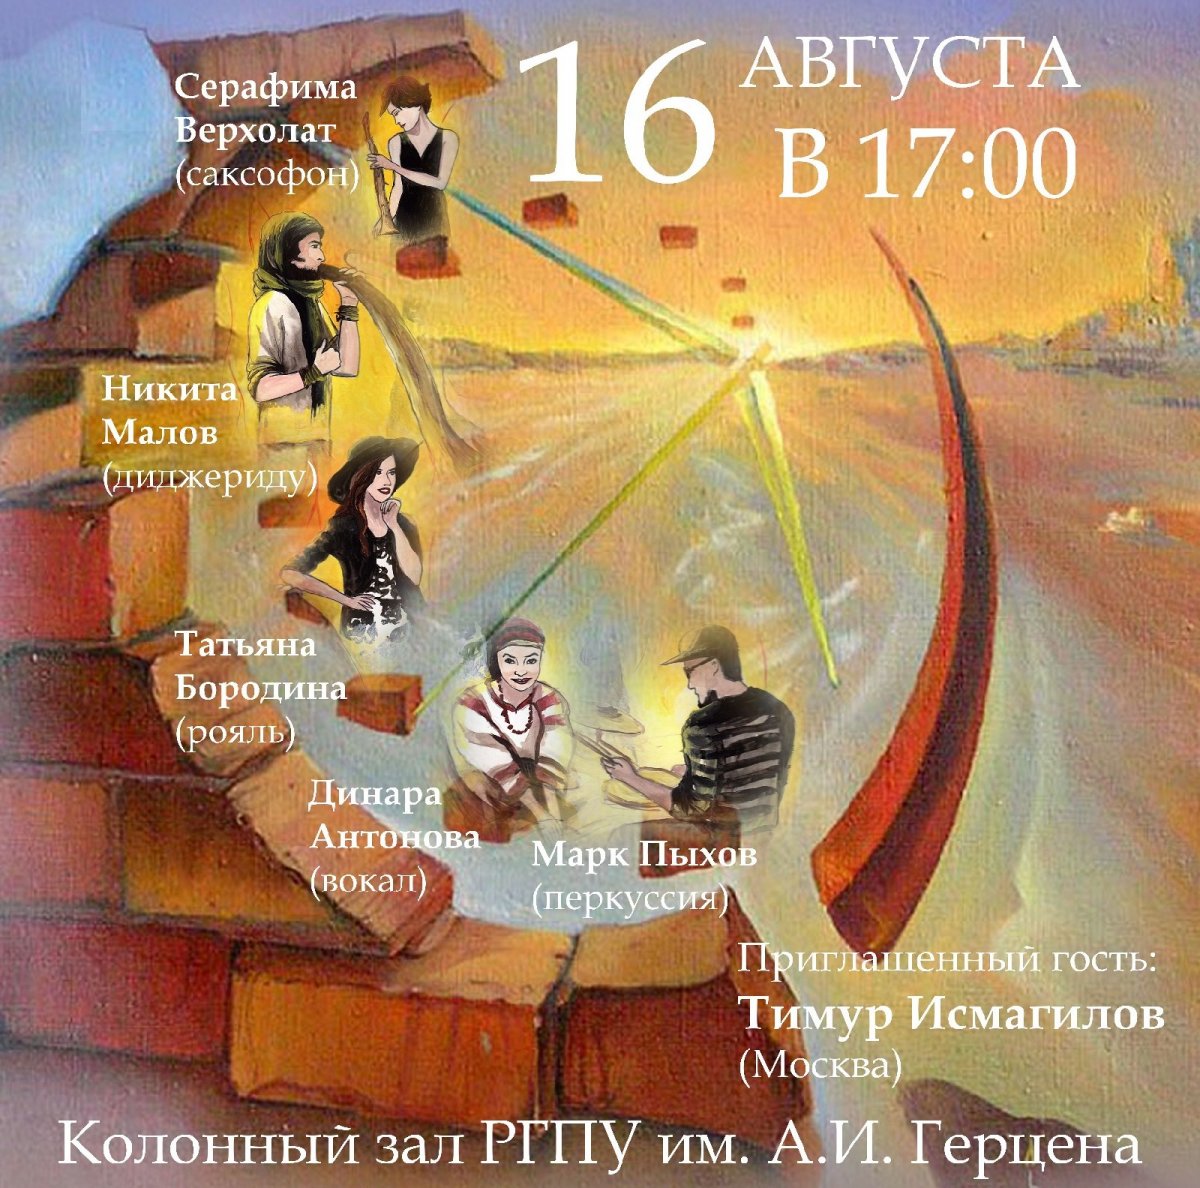 Уже завтра, 16 августа, в РГПУ им. А. И. Герцена состоится концерт группы «Вечное время» в рамках проекта